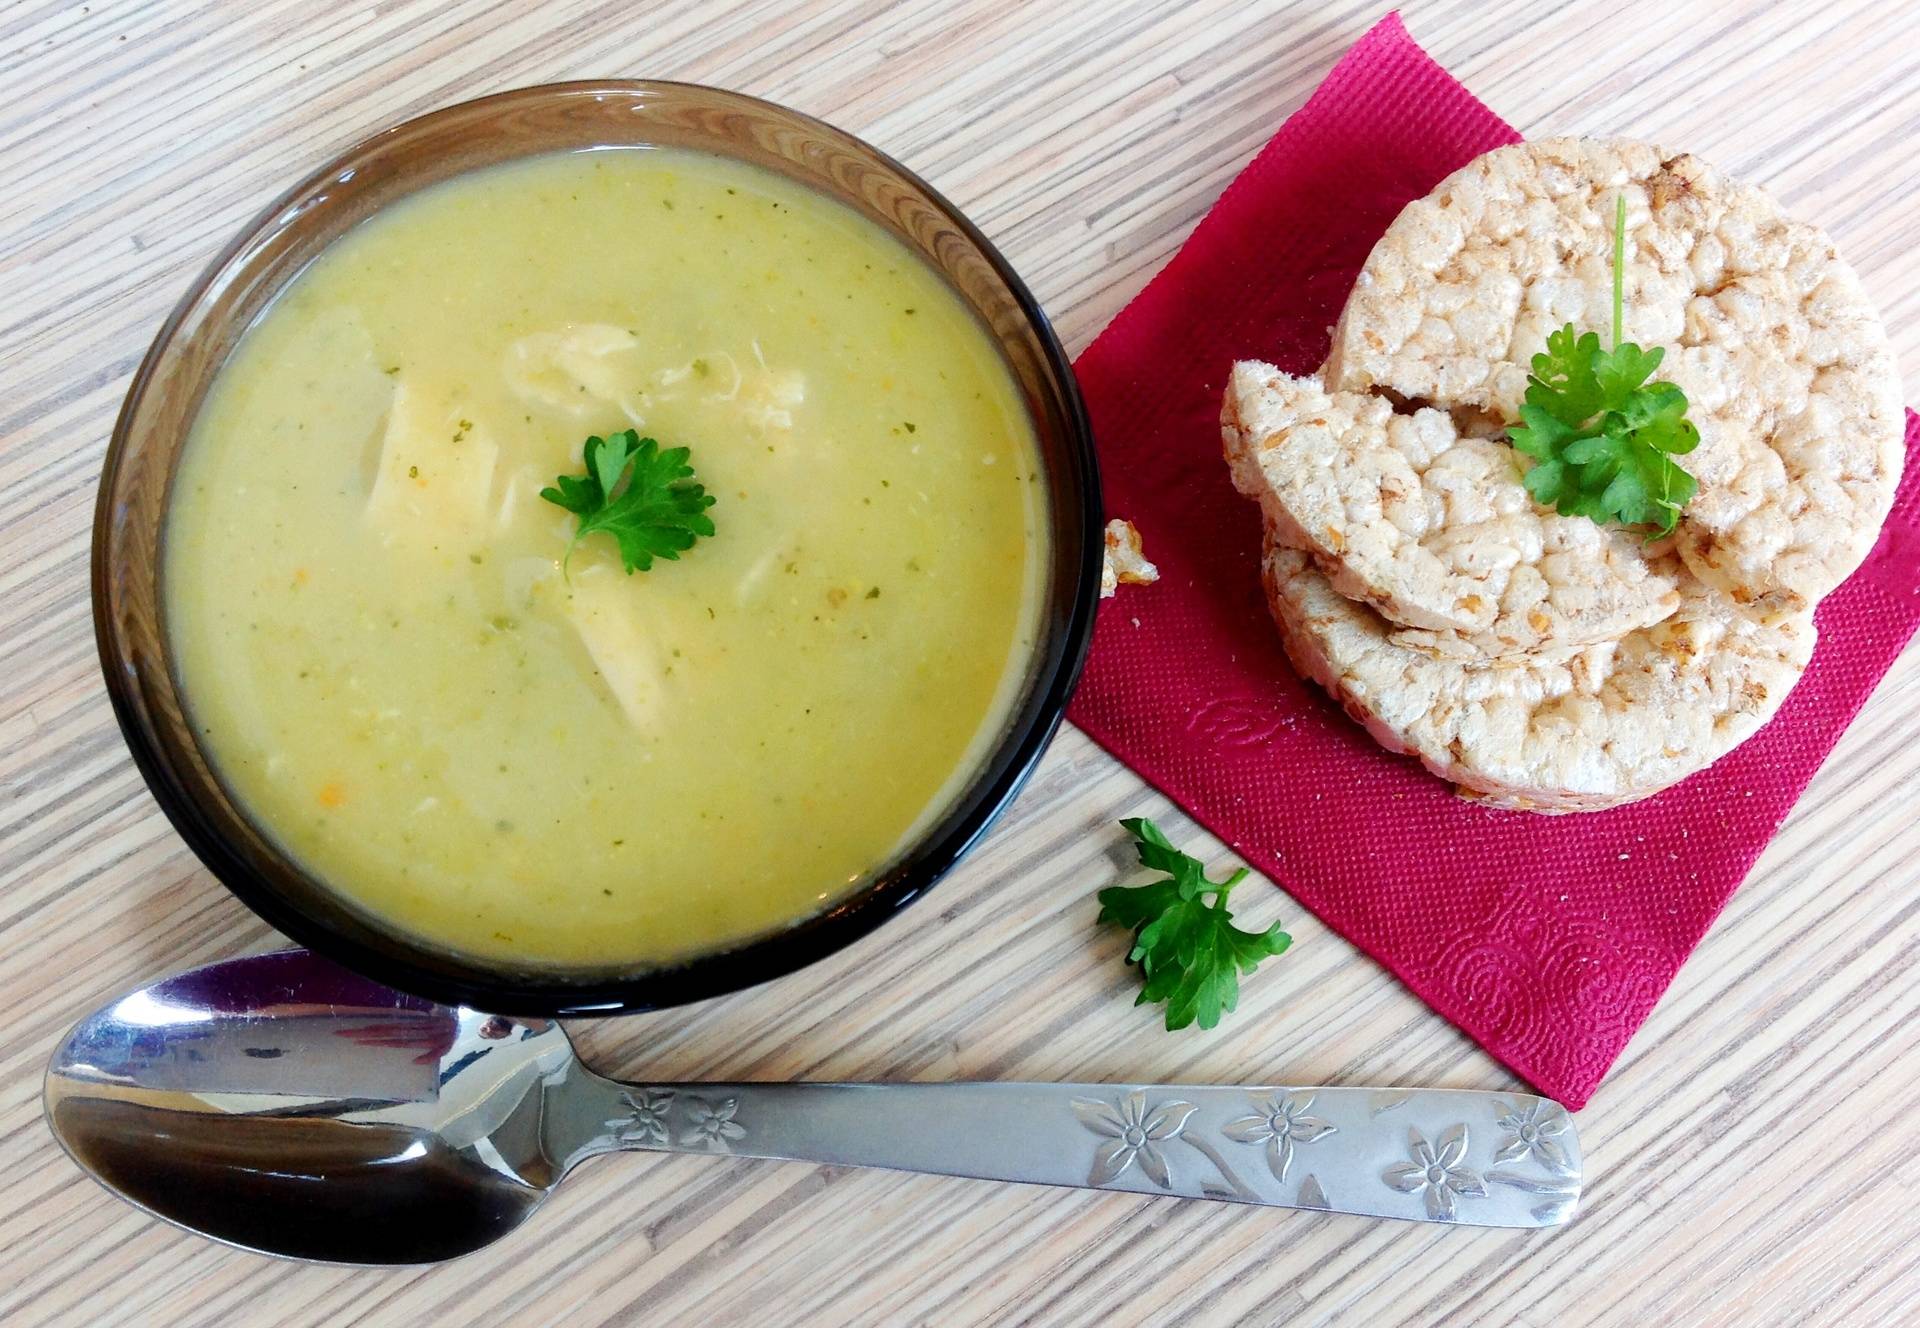 Супы для кормящих мам: несложные разрешенные рецепты с фото